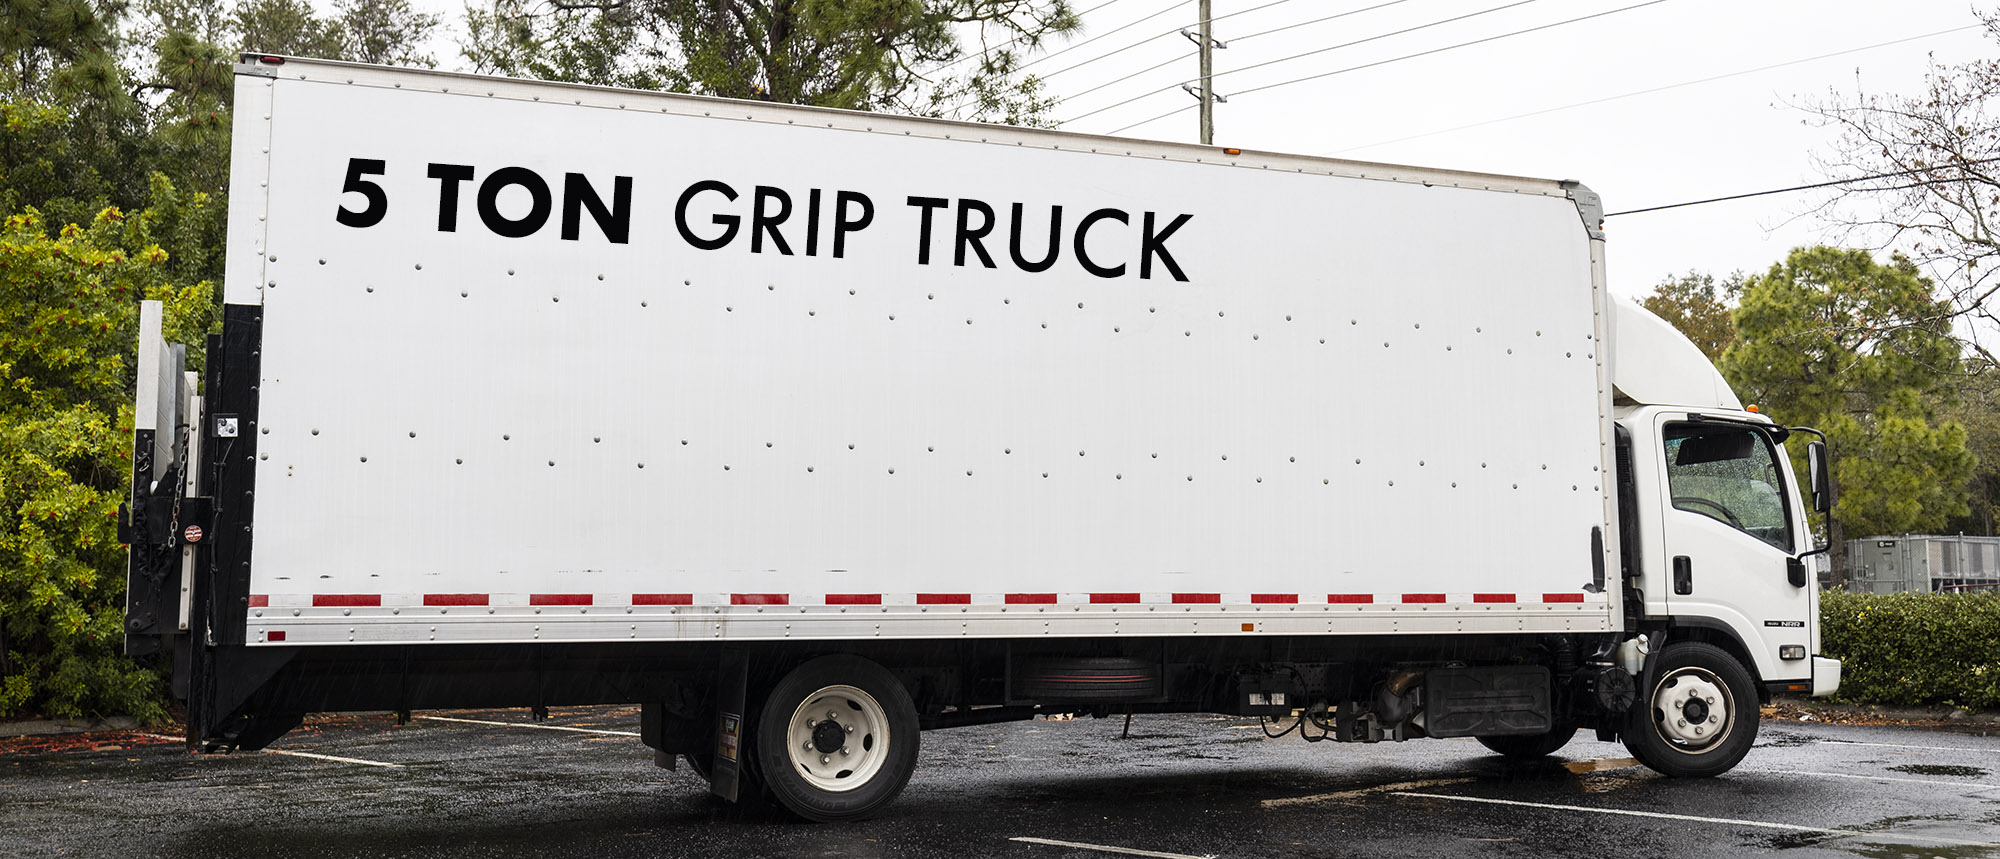 Grip Truck Rental Tampa FL